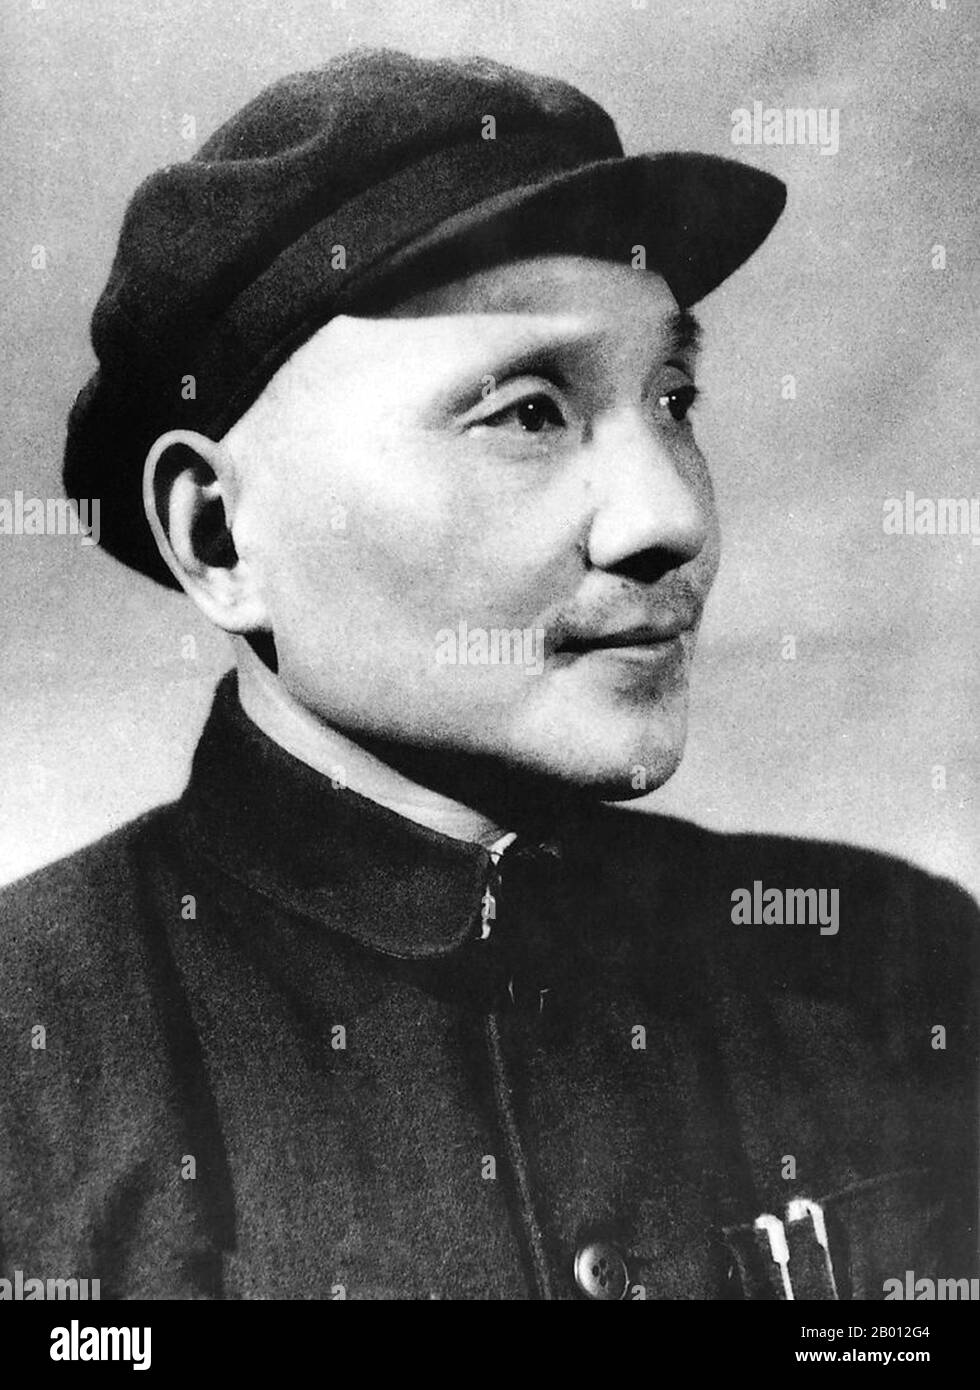 China: Deng Xiaoping (Teng Hsiao-p'ing, 1904-1997) c. 1949. Deng Xiaoping (Teng Hsiao-p'ing; 22. August 1904 – 19. Februar 1997) war ein chinesischer Politiker, Staatsmann, Theoretiker und Diplomat. Als Führer der Kommunistischen Partei Chinas war Deng ein Reformer, der China zu einer Marktwirtschaft führte. Obwohl Deng nie als Staatschef, Regierungschef oder Generalsekretär der Kommunistischen Partei Chinas (historisch die höchste Position im kommunistischen China) im Amt war, diente er dennoch von 1978 bis 1992 als oberster Führer der Volksrepublik China. Stockfoto